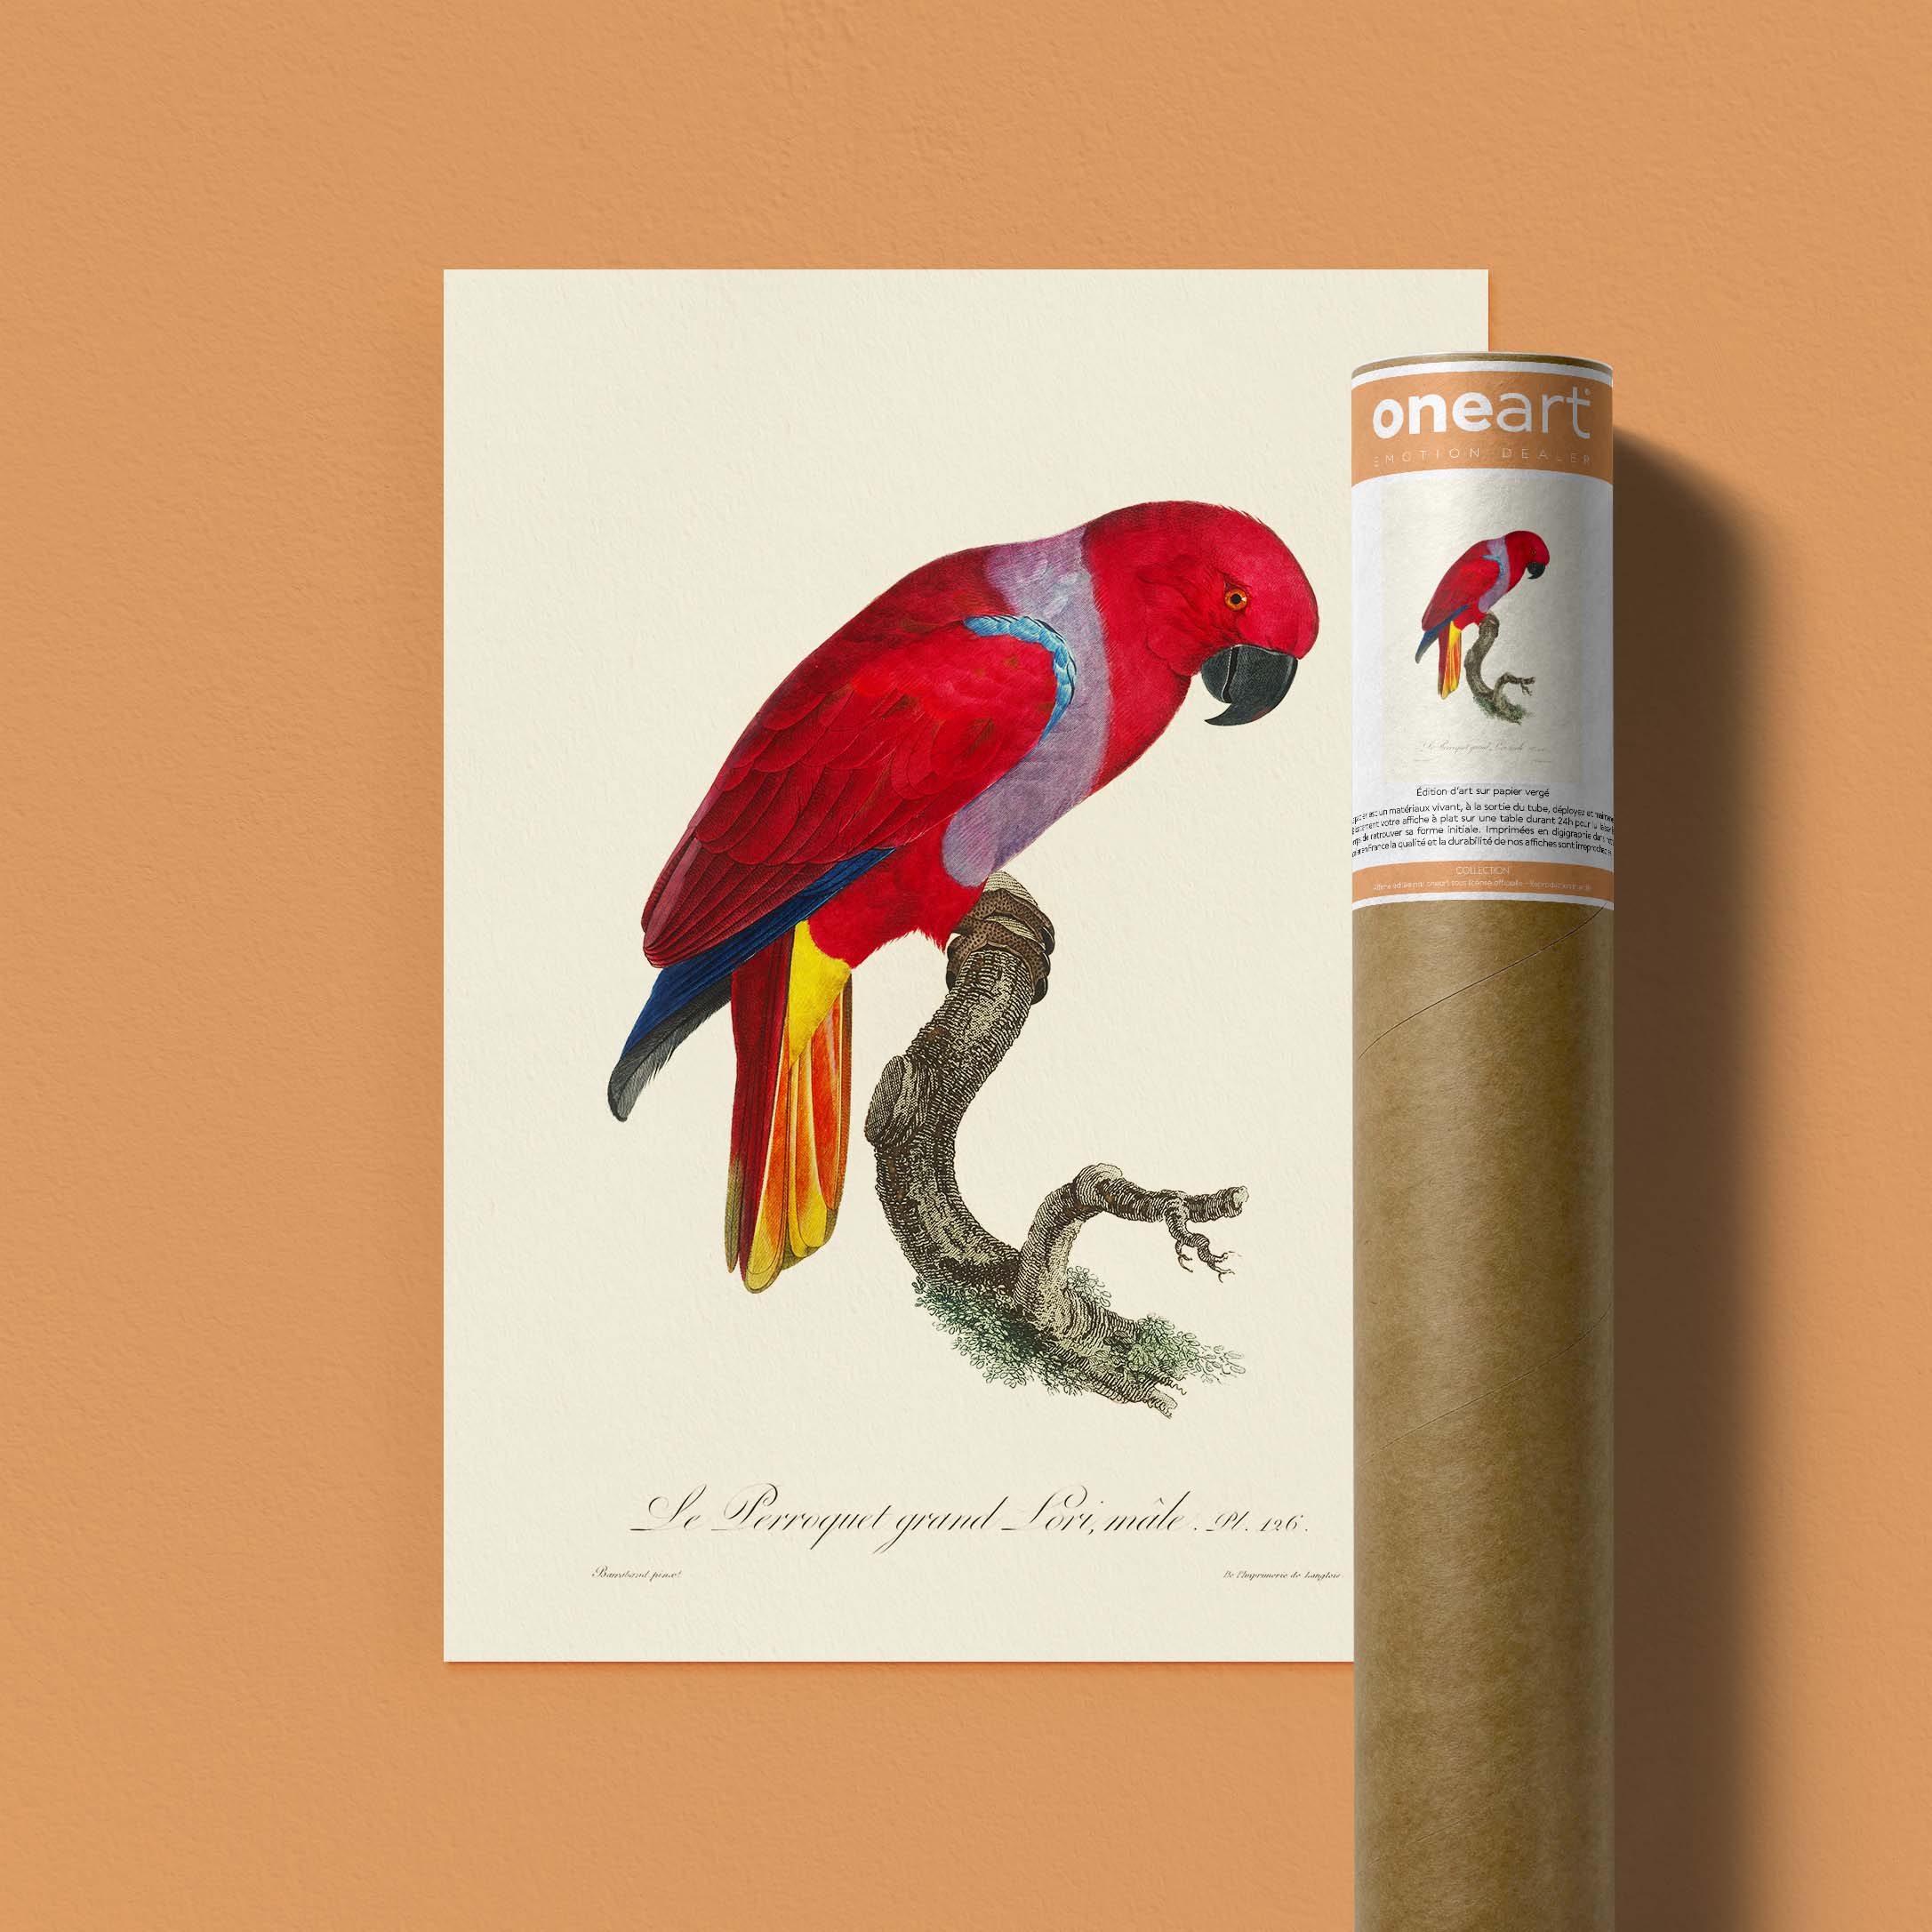 Planche d'ornithologie - Le perroquet grand Lori-oneart.fr